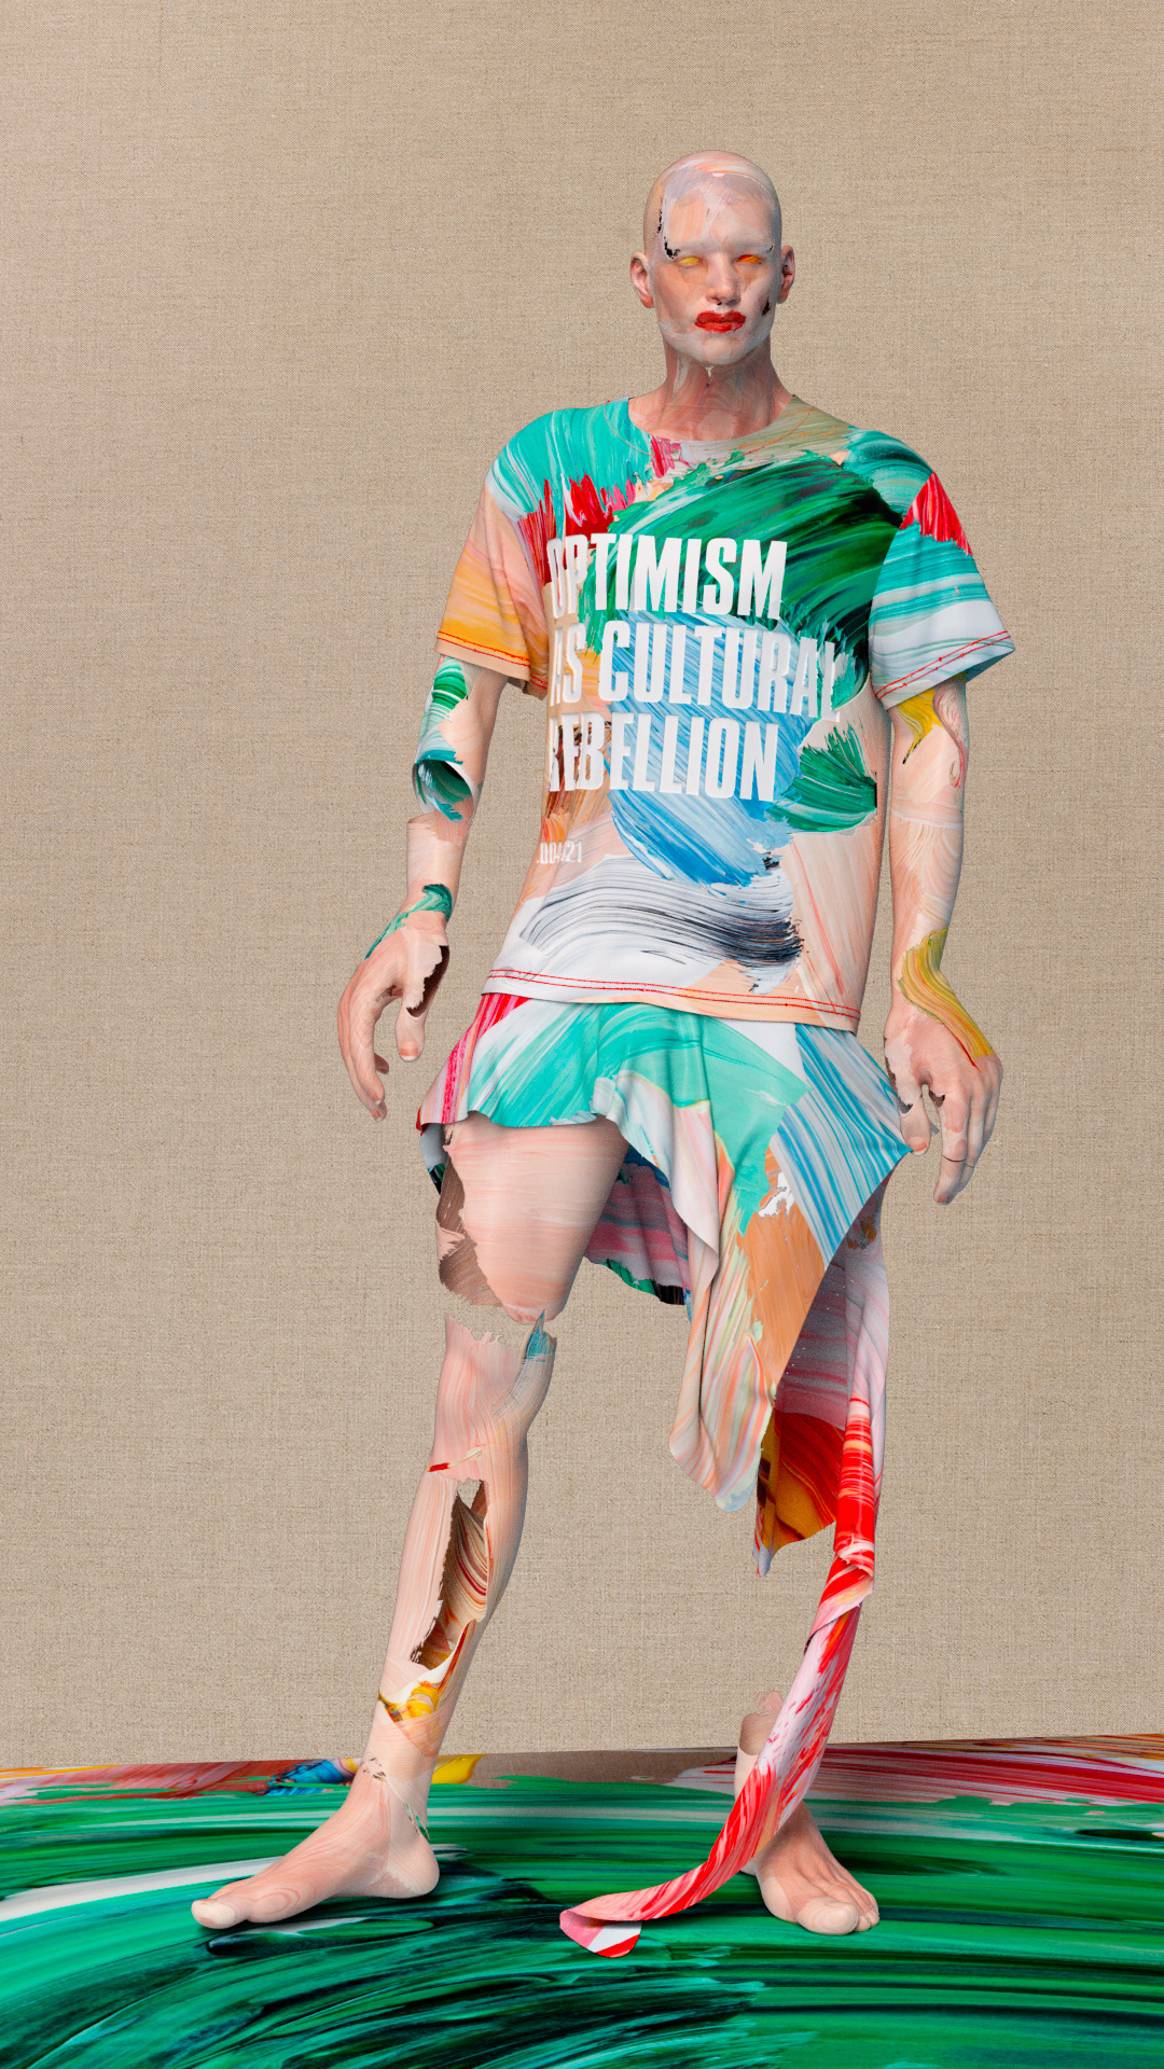 Imagen: Optimismo como rebelión cultural 2004-2021 Camiseta y falda de Matthew Stone